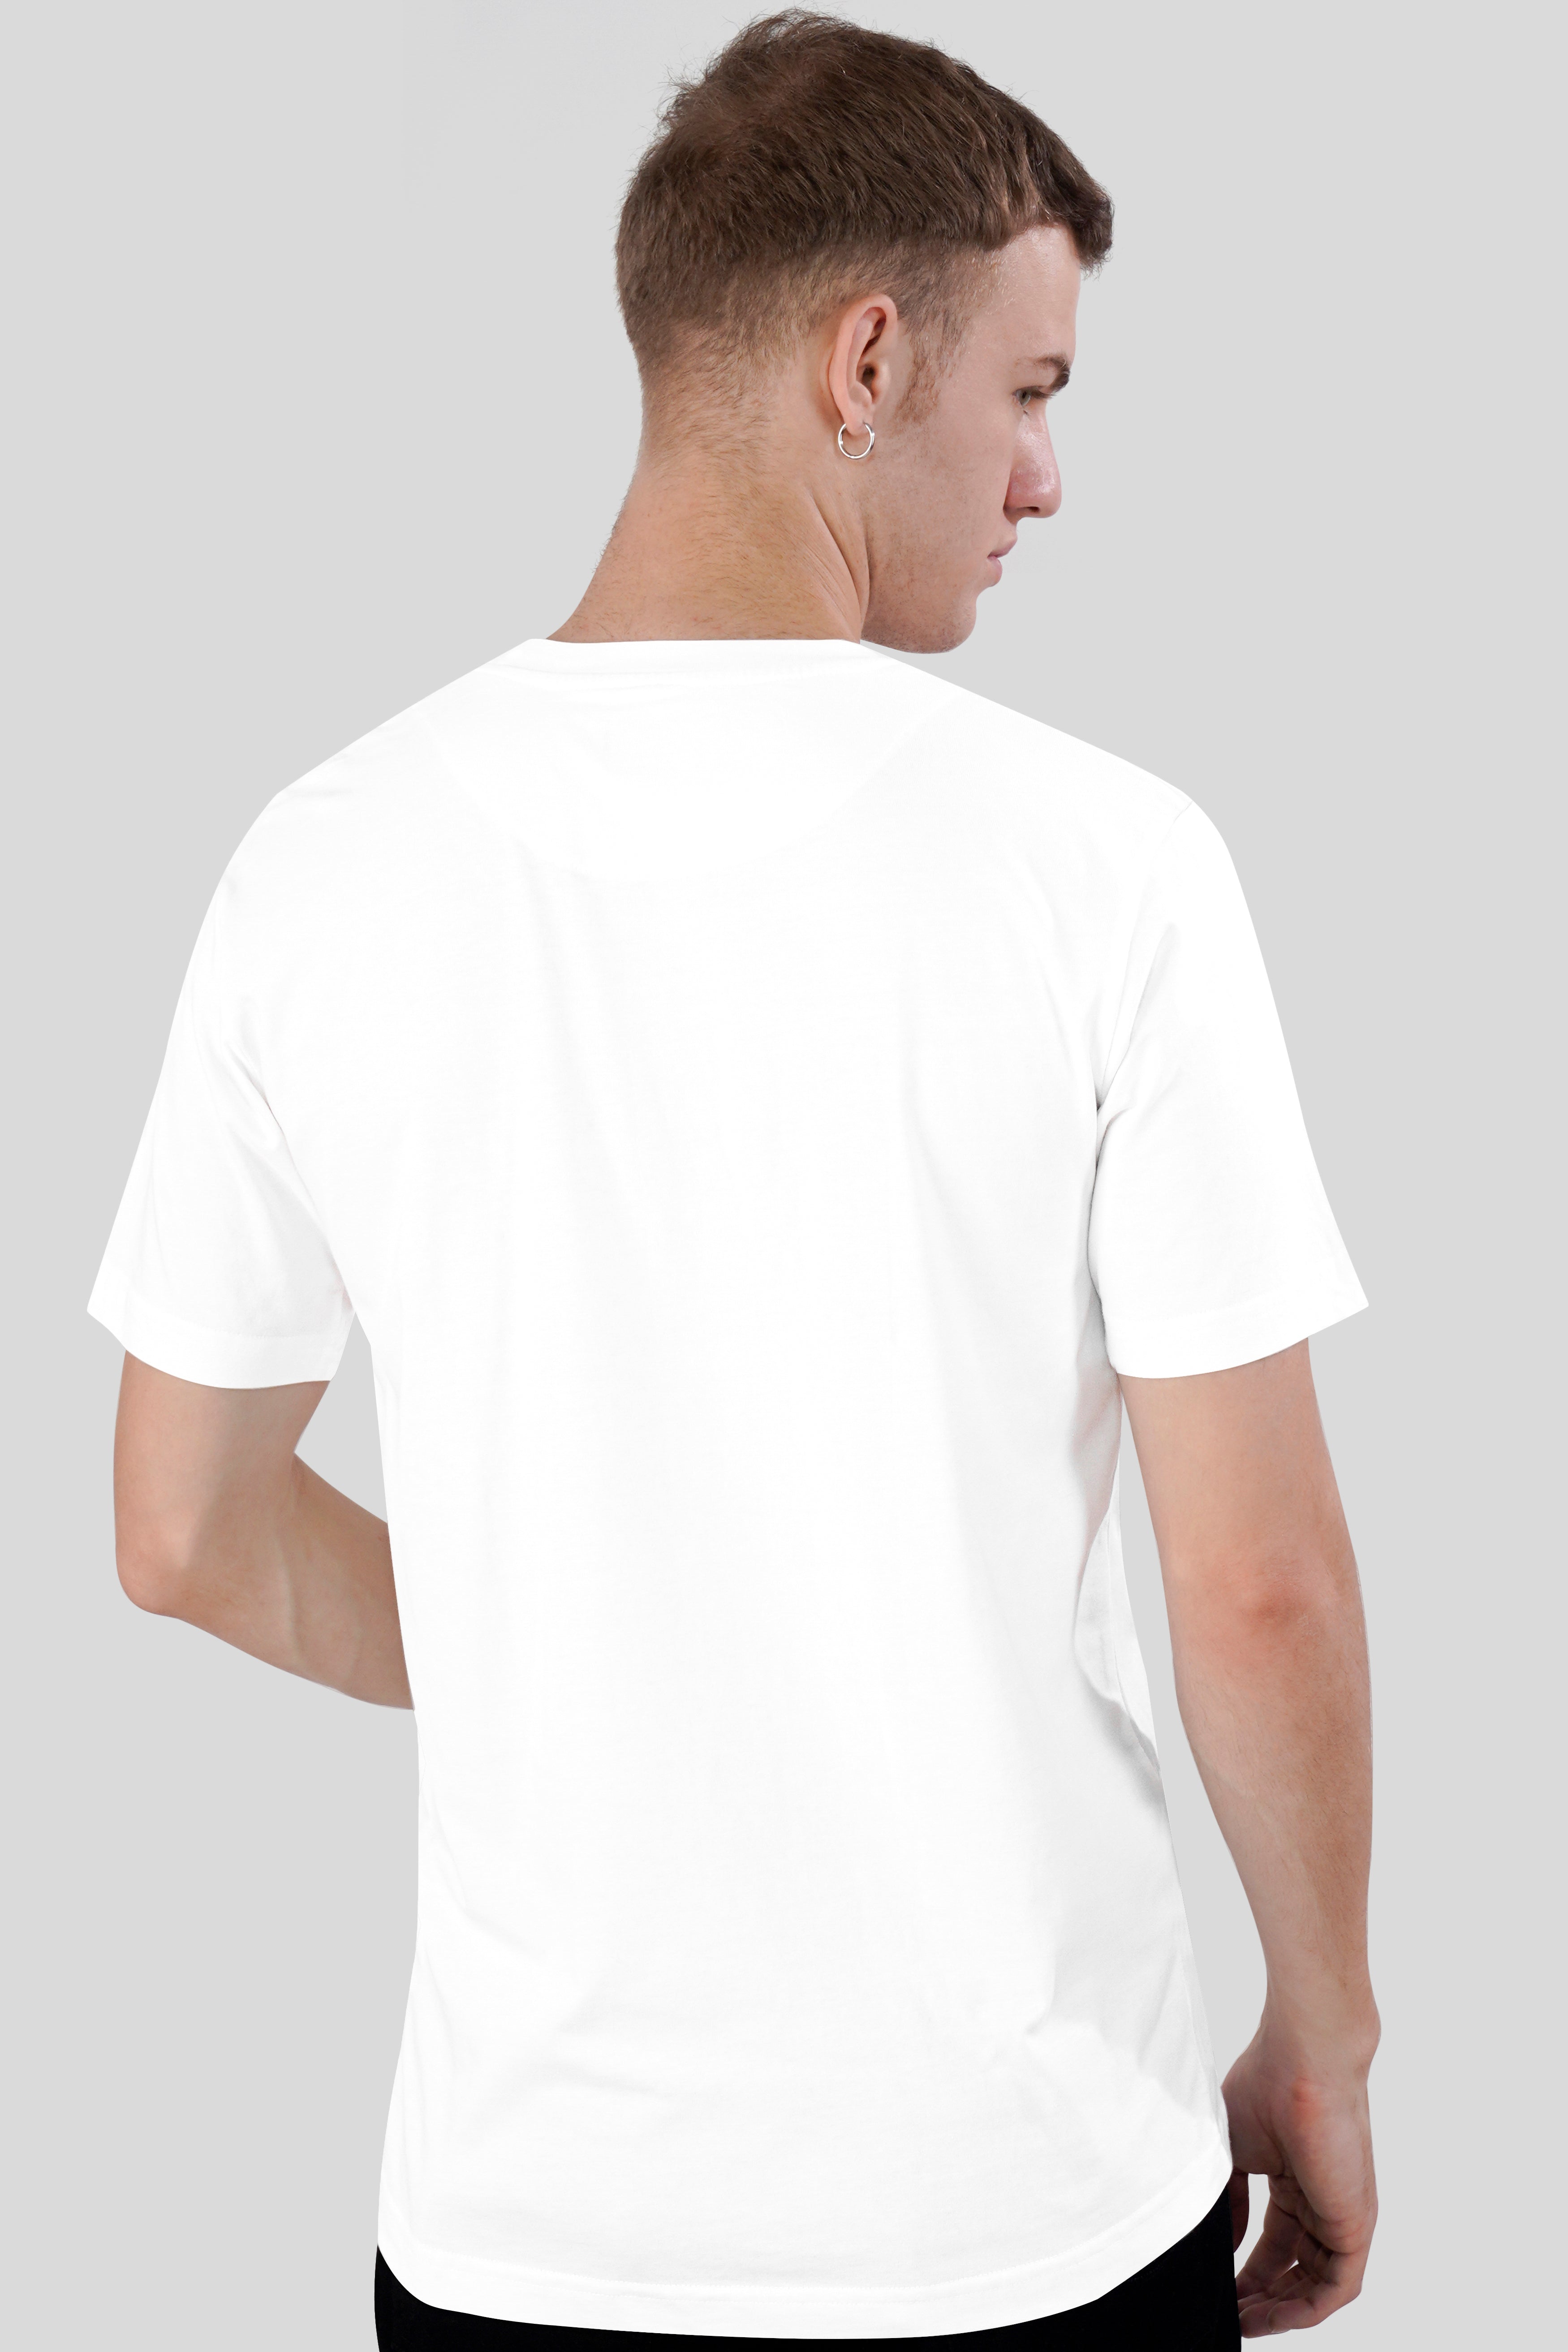 Bright White Printed Premium Cotton T-shirt TS953-S, TS953-M, TS953-L, TS953-XL, TS953-XXL